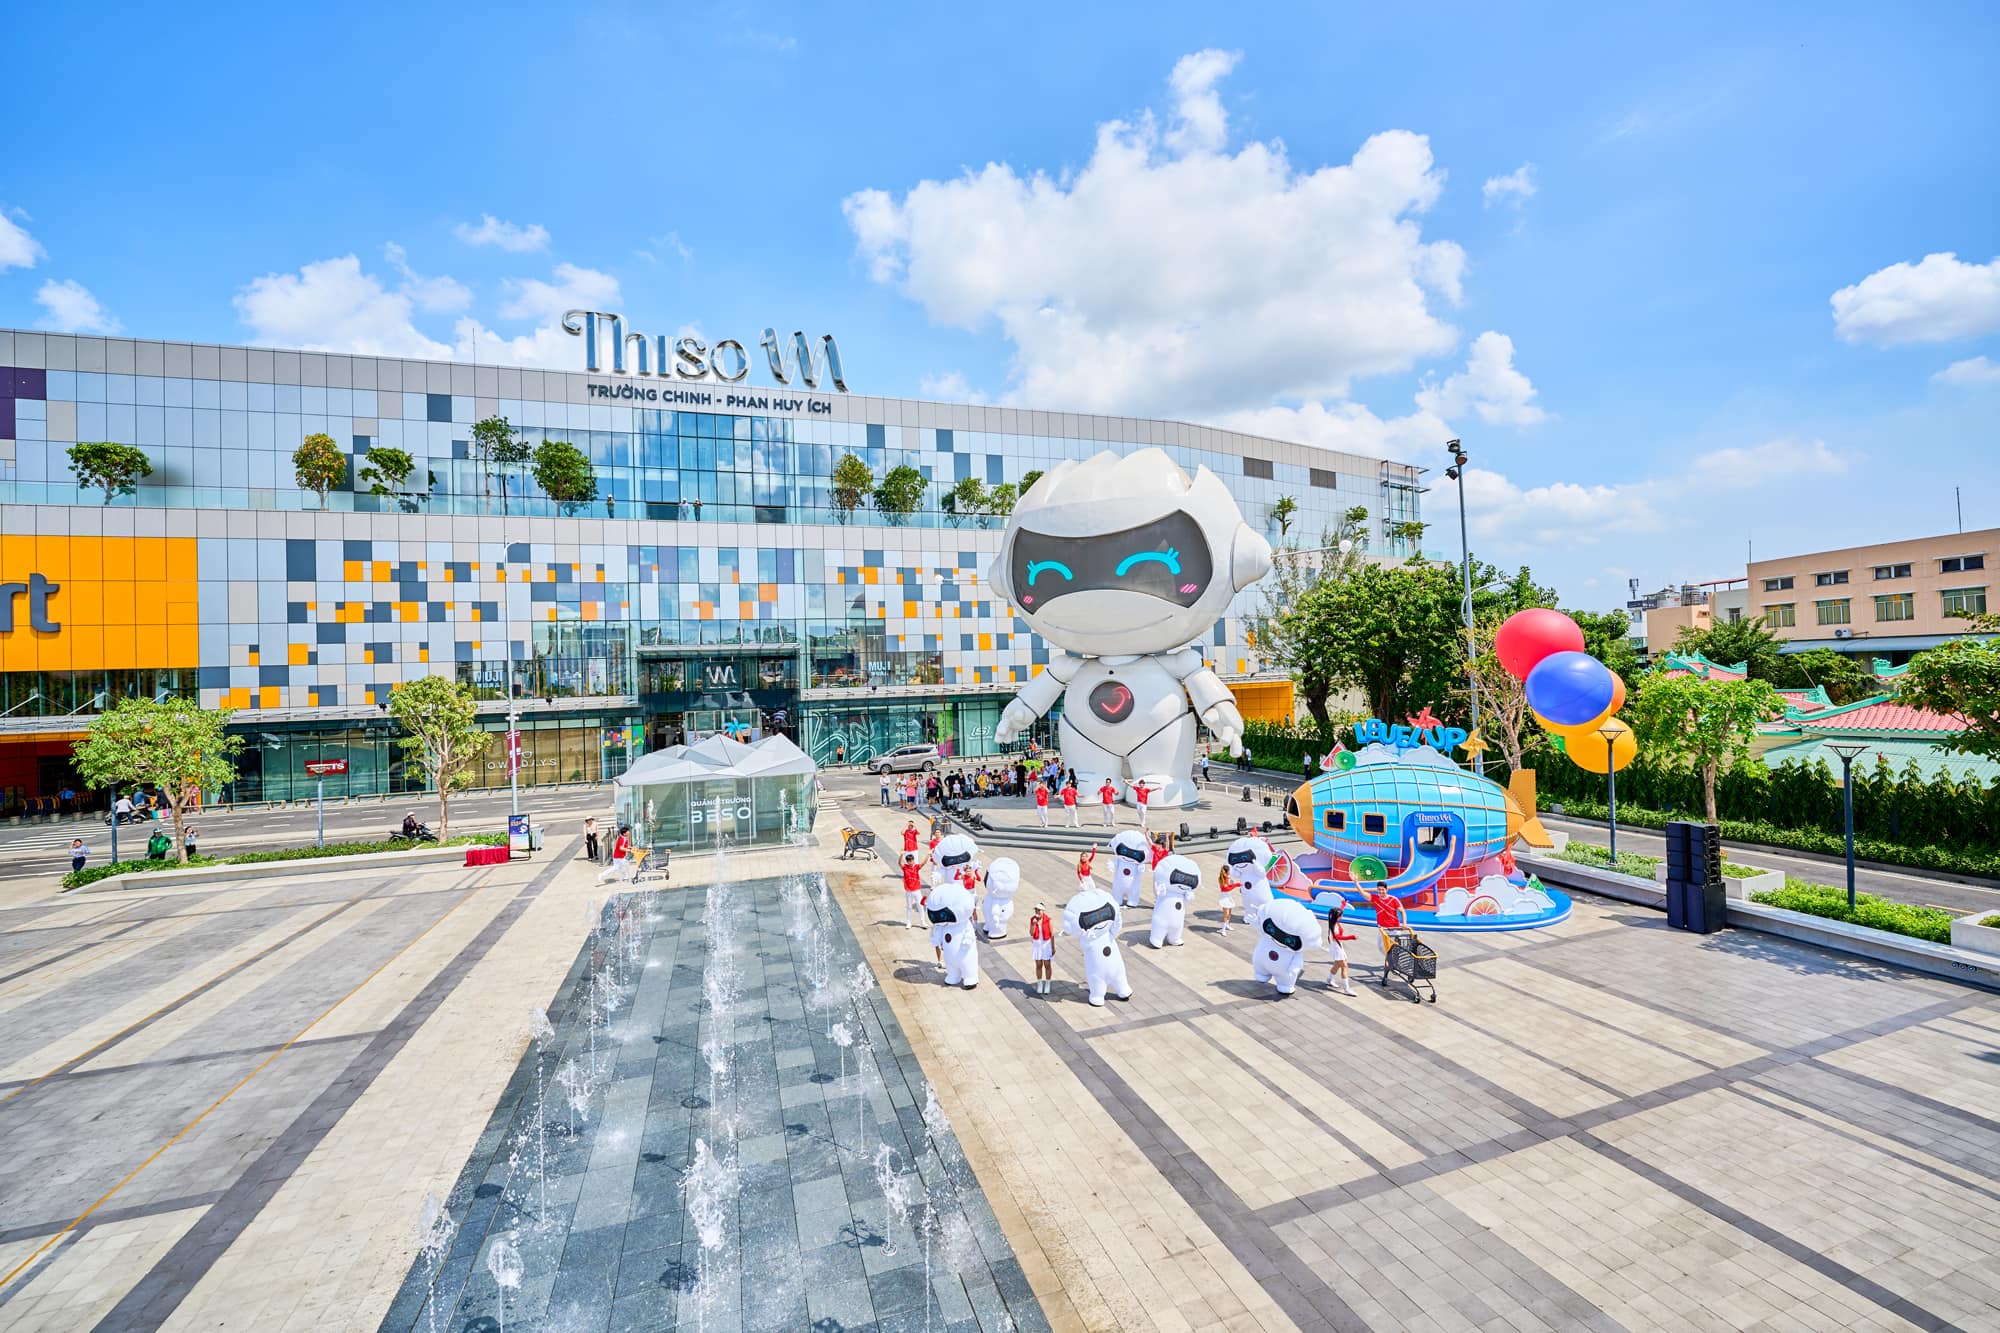 Thiso Mall Trường Chinh – Phan Huy Ích mang đến trải nghiệm khác biệt với chủ đề “Level up”